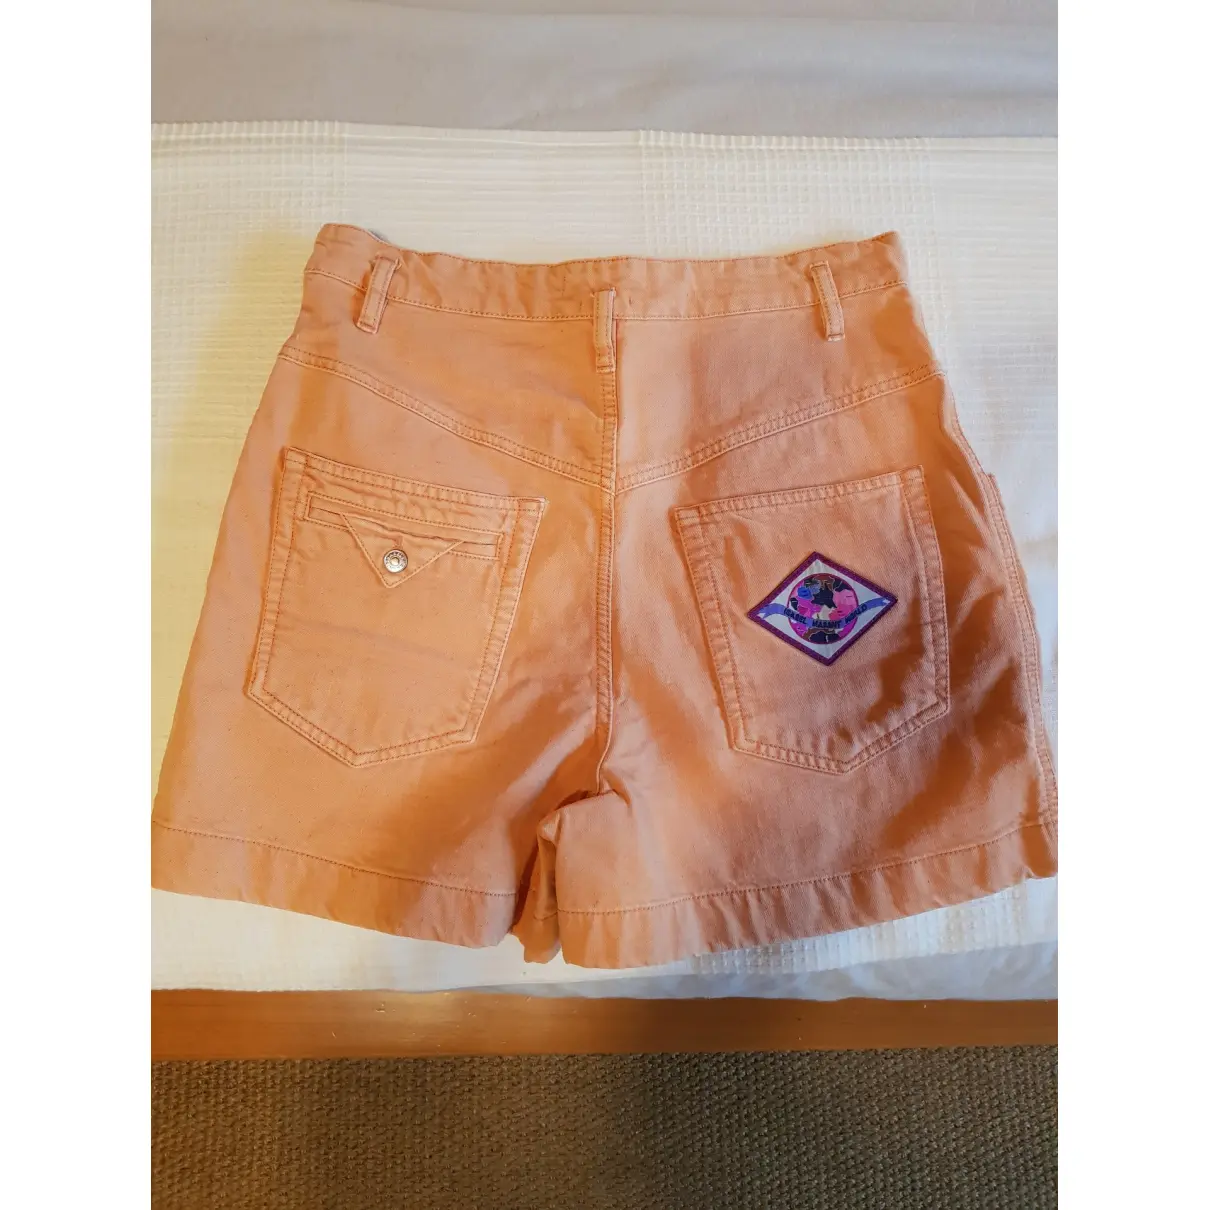 Buy Isabel Marant Orange Cotton Shorts online